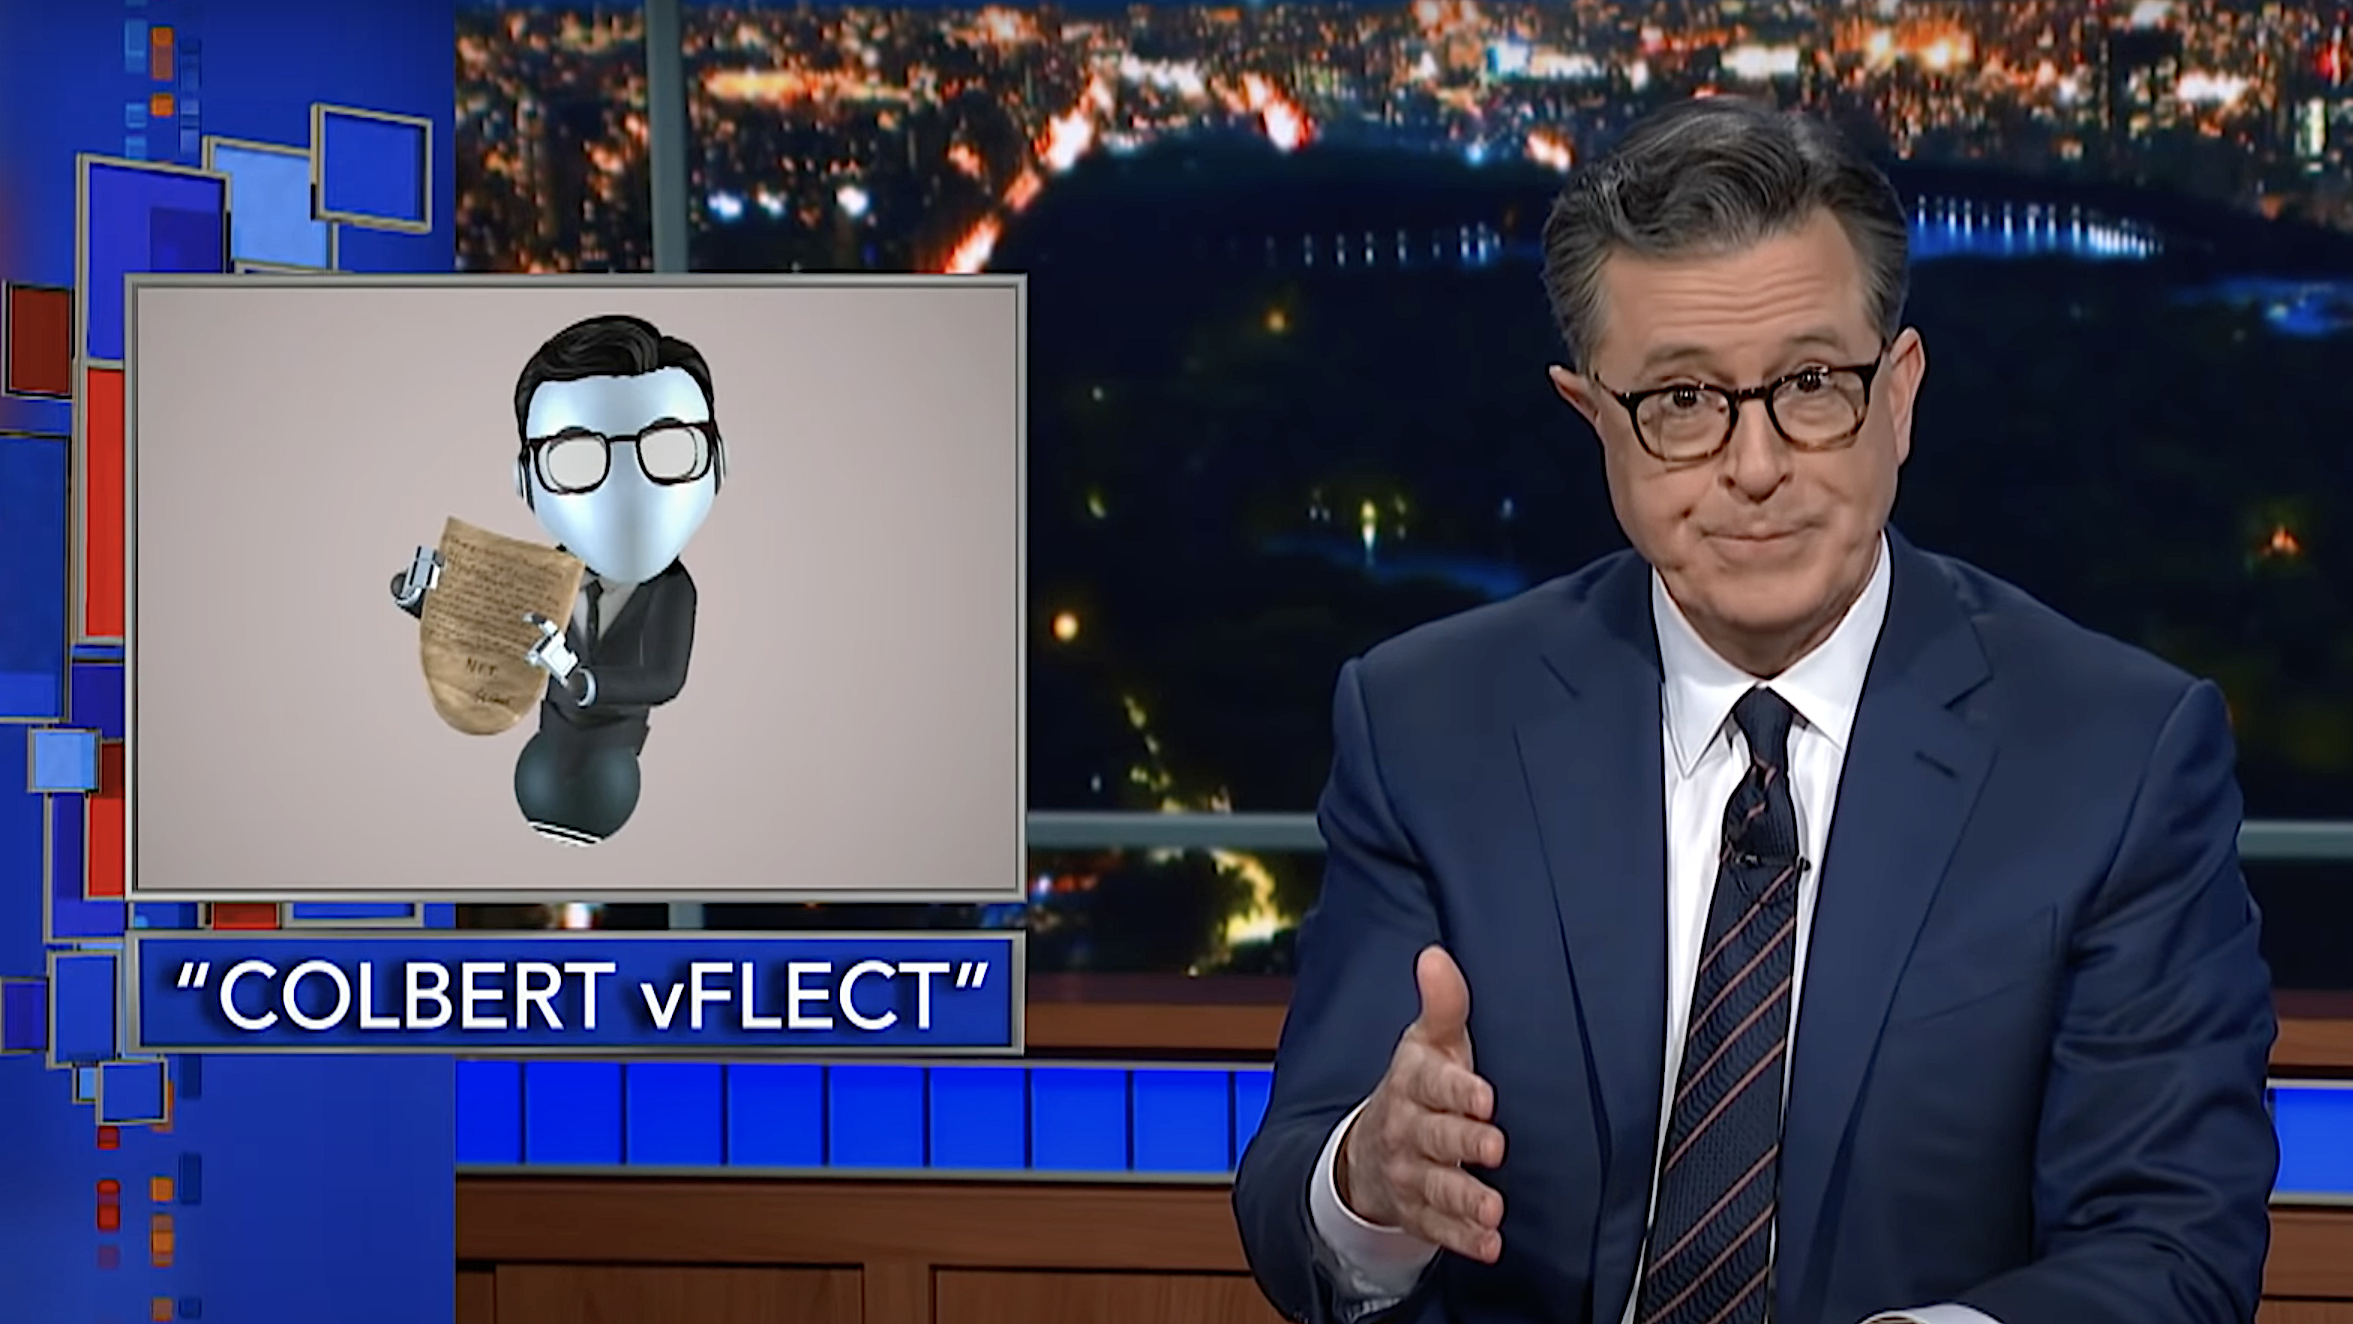 The internet eats itself as Stephen Colbert’s AFT becomes an NFT